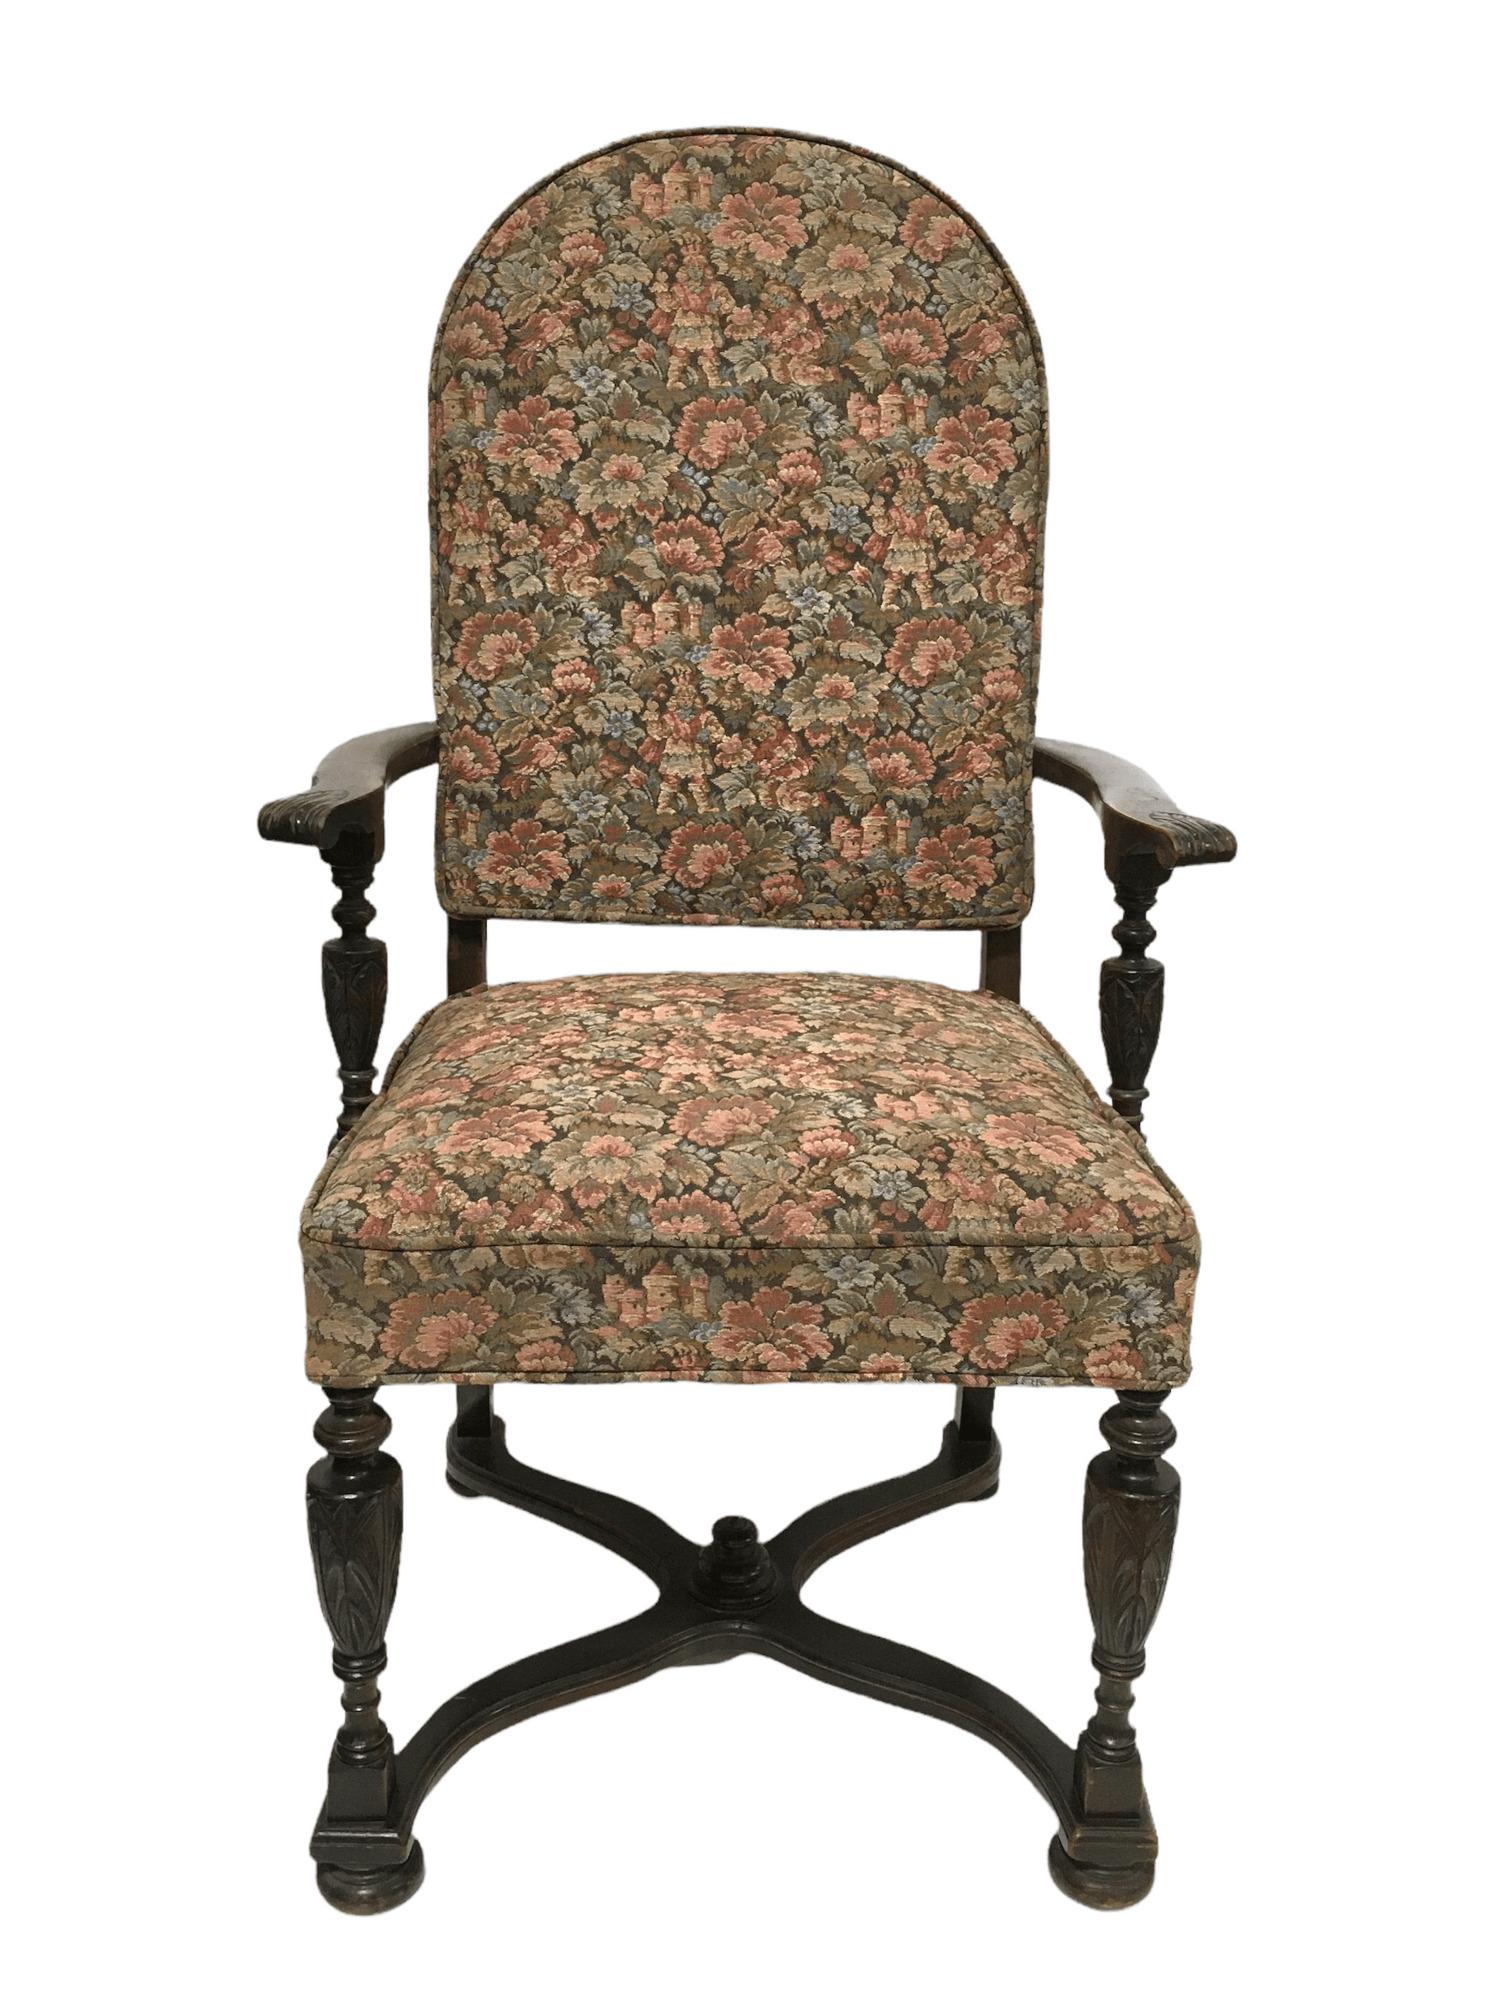 Fauteuil trône ancien en noyer avec tapisserie française et bois sculpté. 19ème XIX $875
 
Cette chaise est un trésor du passé. Son cadre en bois de noyer massif lui confère une stabilité et un aspect élégant, en plus des sculptures florales